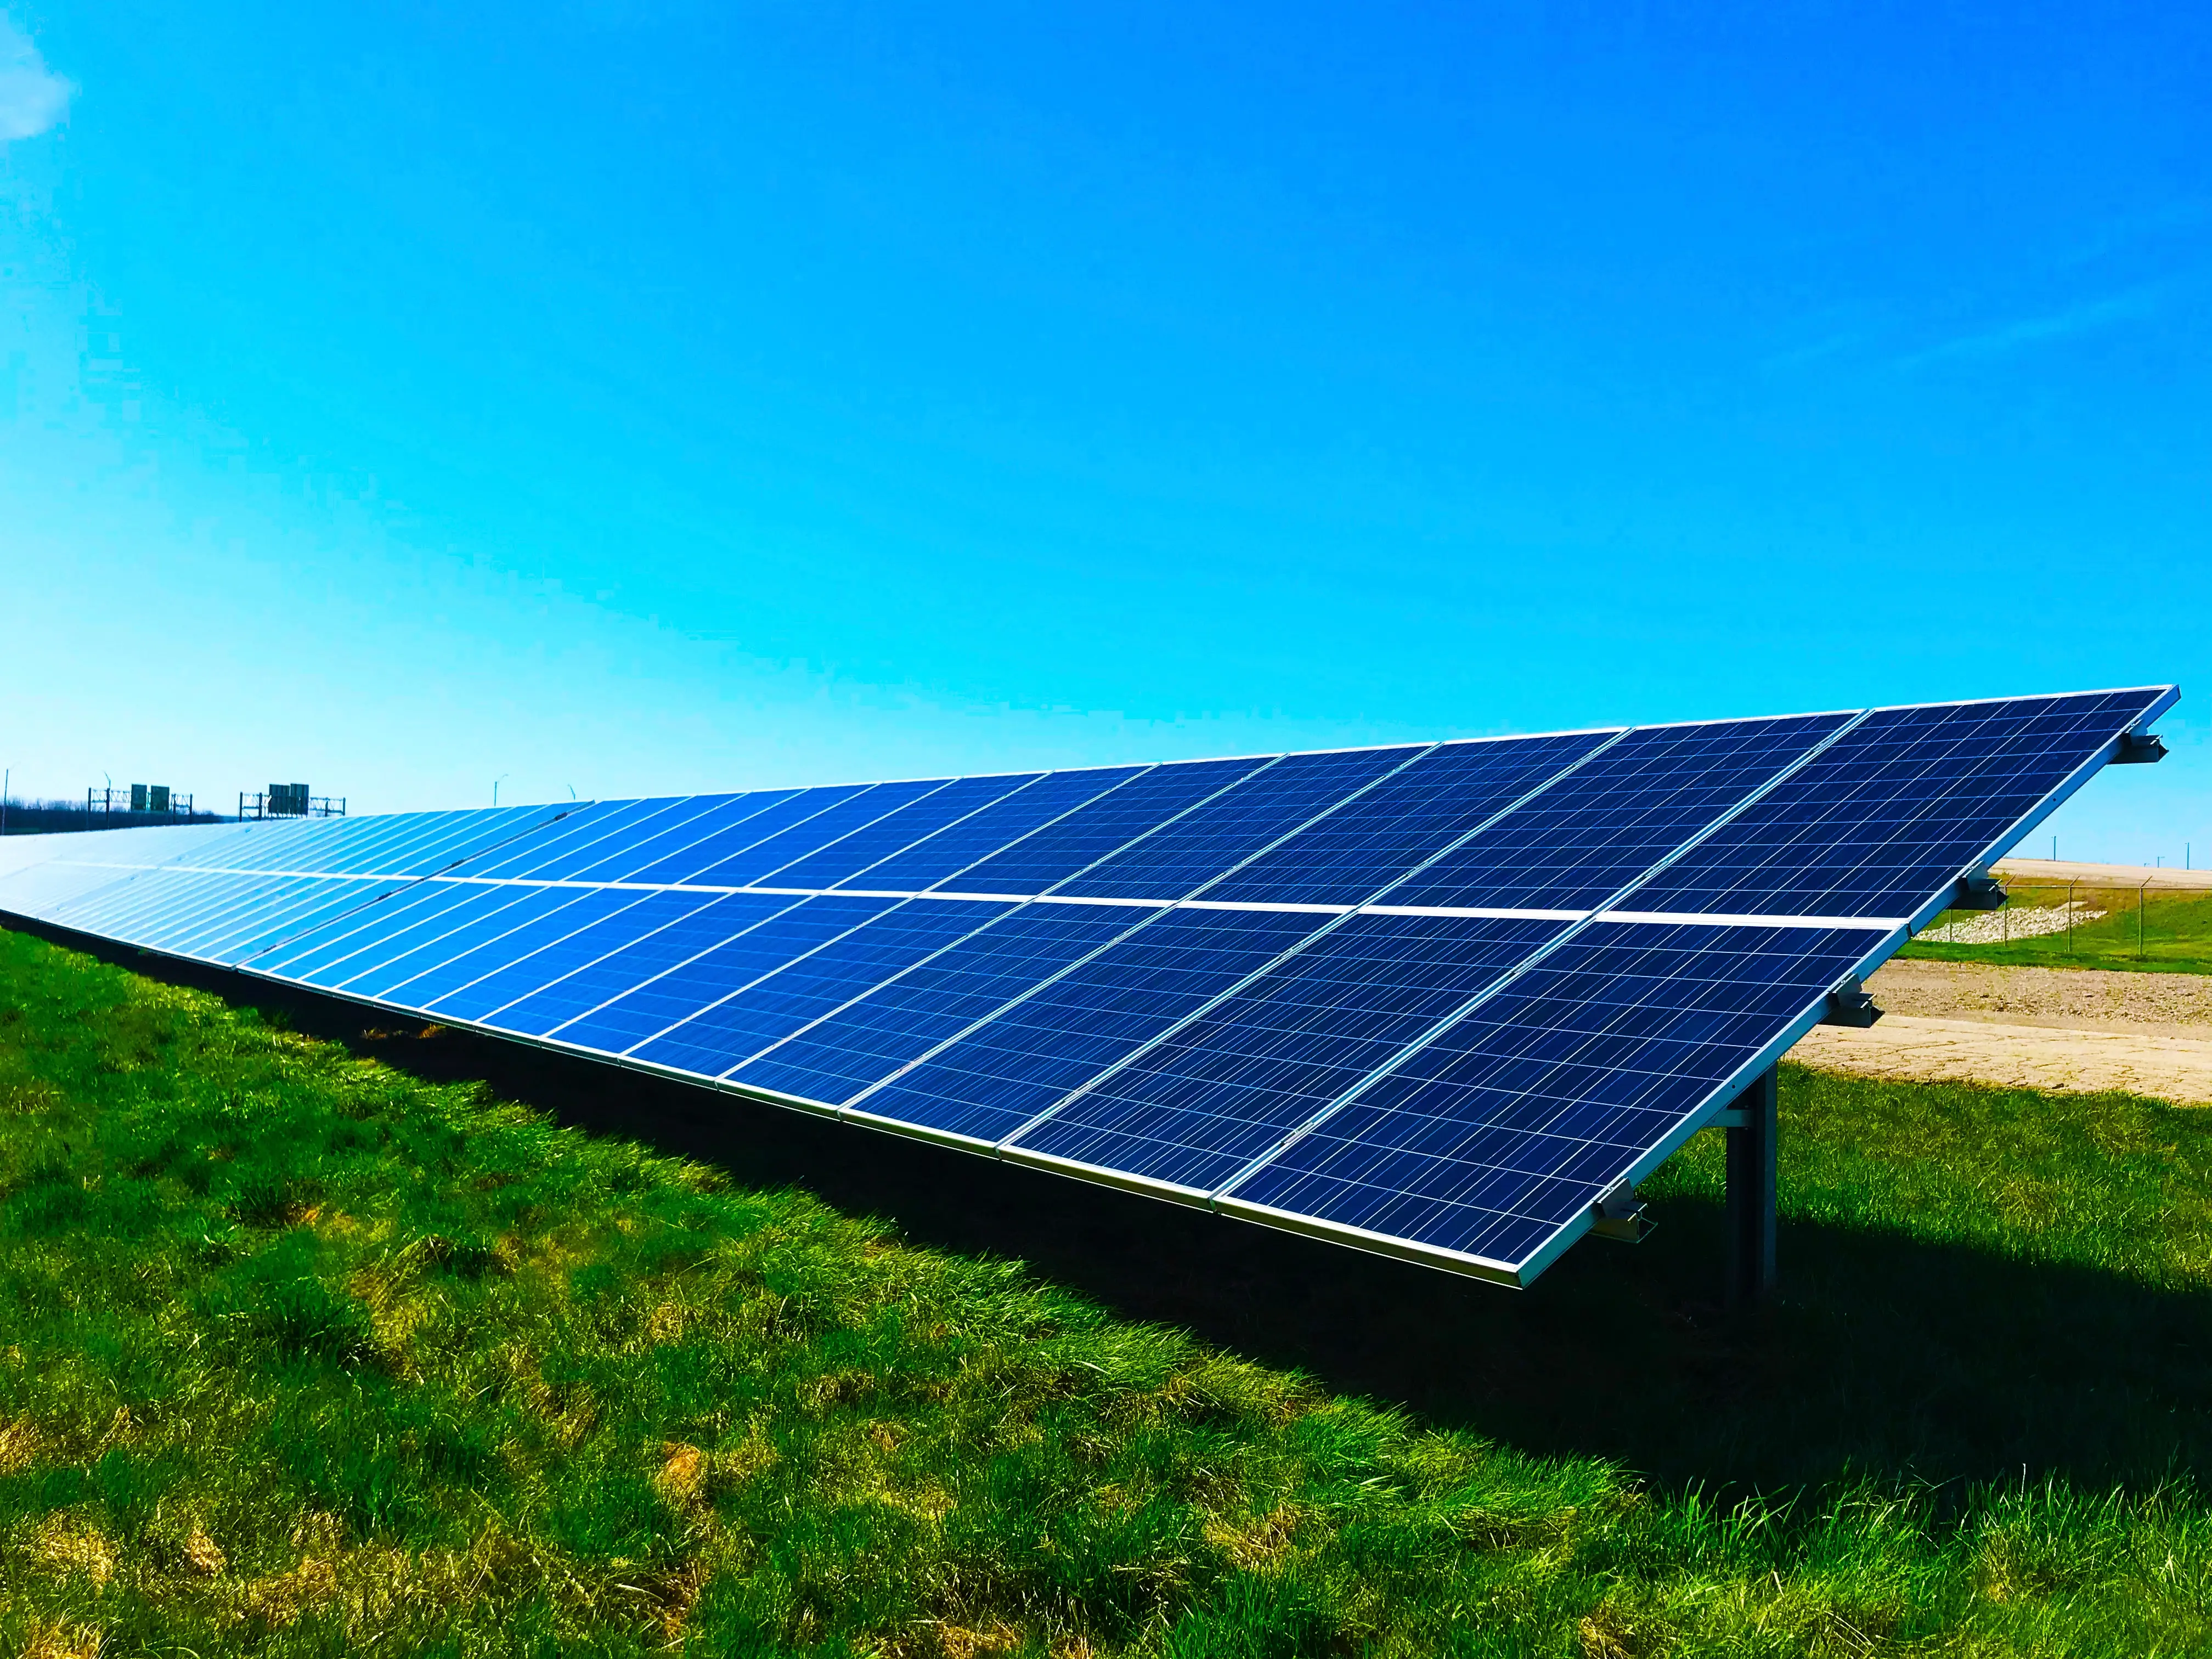 Ein großes Feld von Photovoltaik-Solarmodulen unter einem klaren blauen Himmel. Die Module sind in einer Neigung montiert, um die Sonneneinstrahlung optimal zu nutzen. Unter den Paneelen ist grünes Gras sichtbar.